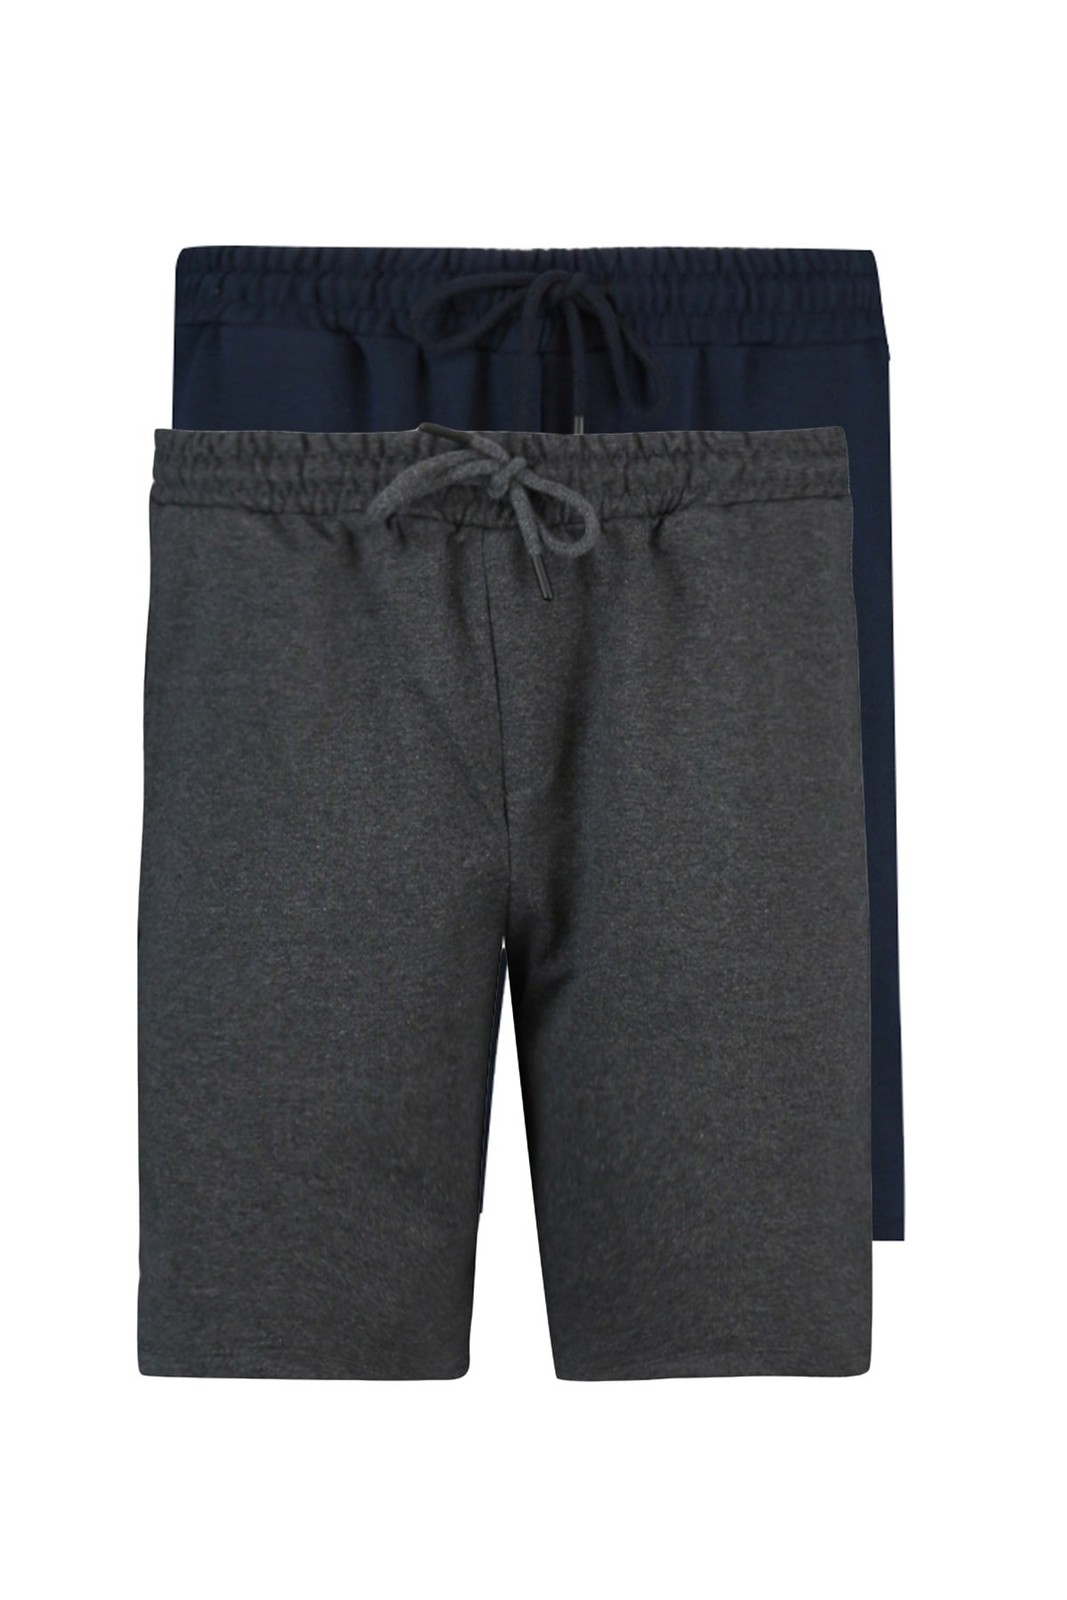 Trendyol Anthracite-Navy Blue Men's Basic Regular/Normal Wear Straight 2-pack Shorts.